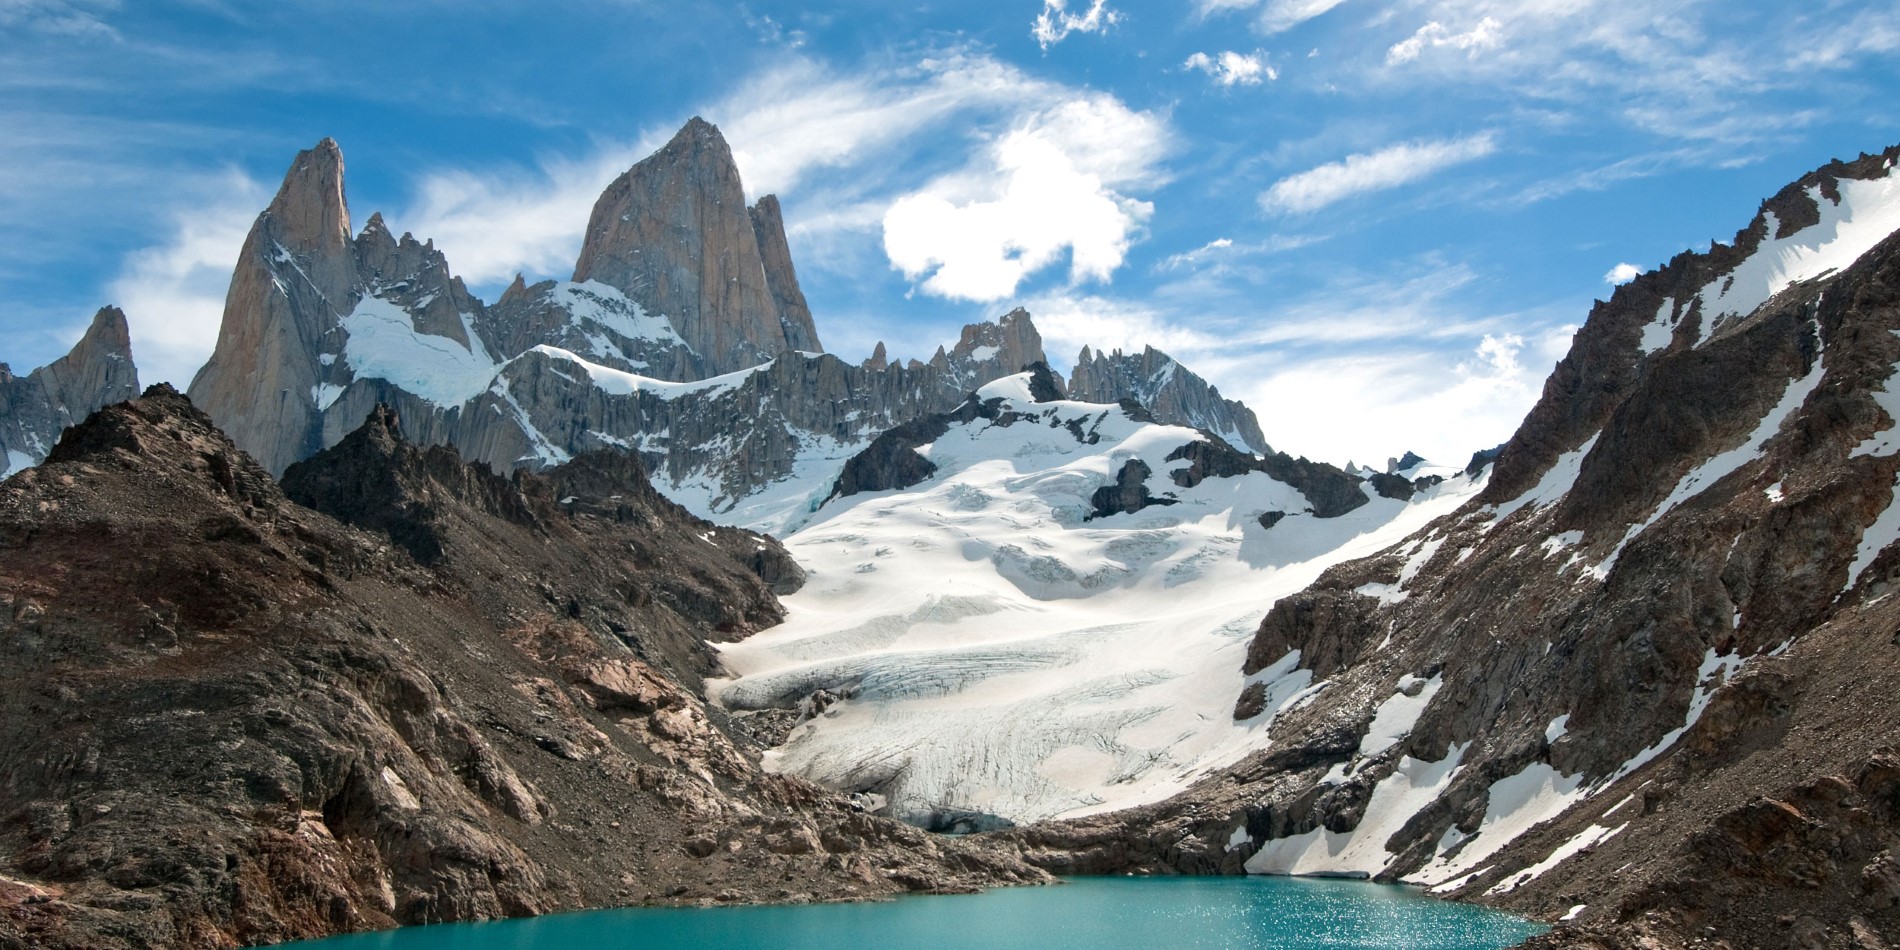 Monte Fitz Roy ligger nära byn El Chaltén på gränsen mellan Argentina och Chile